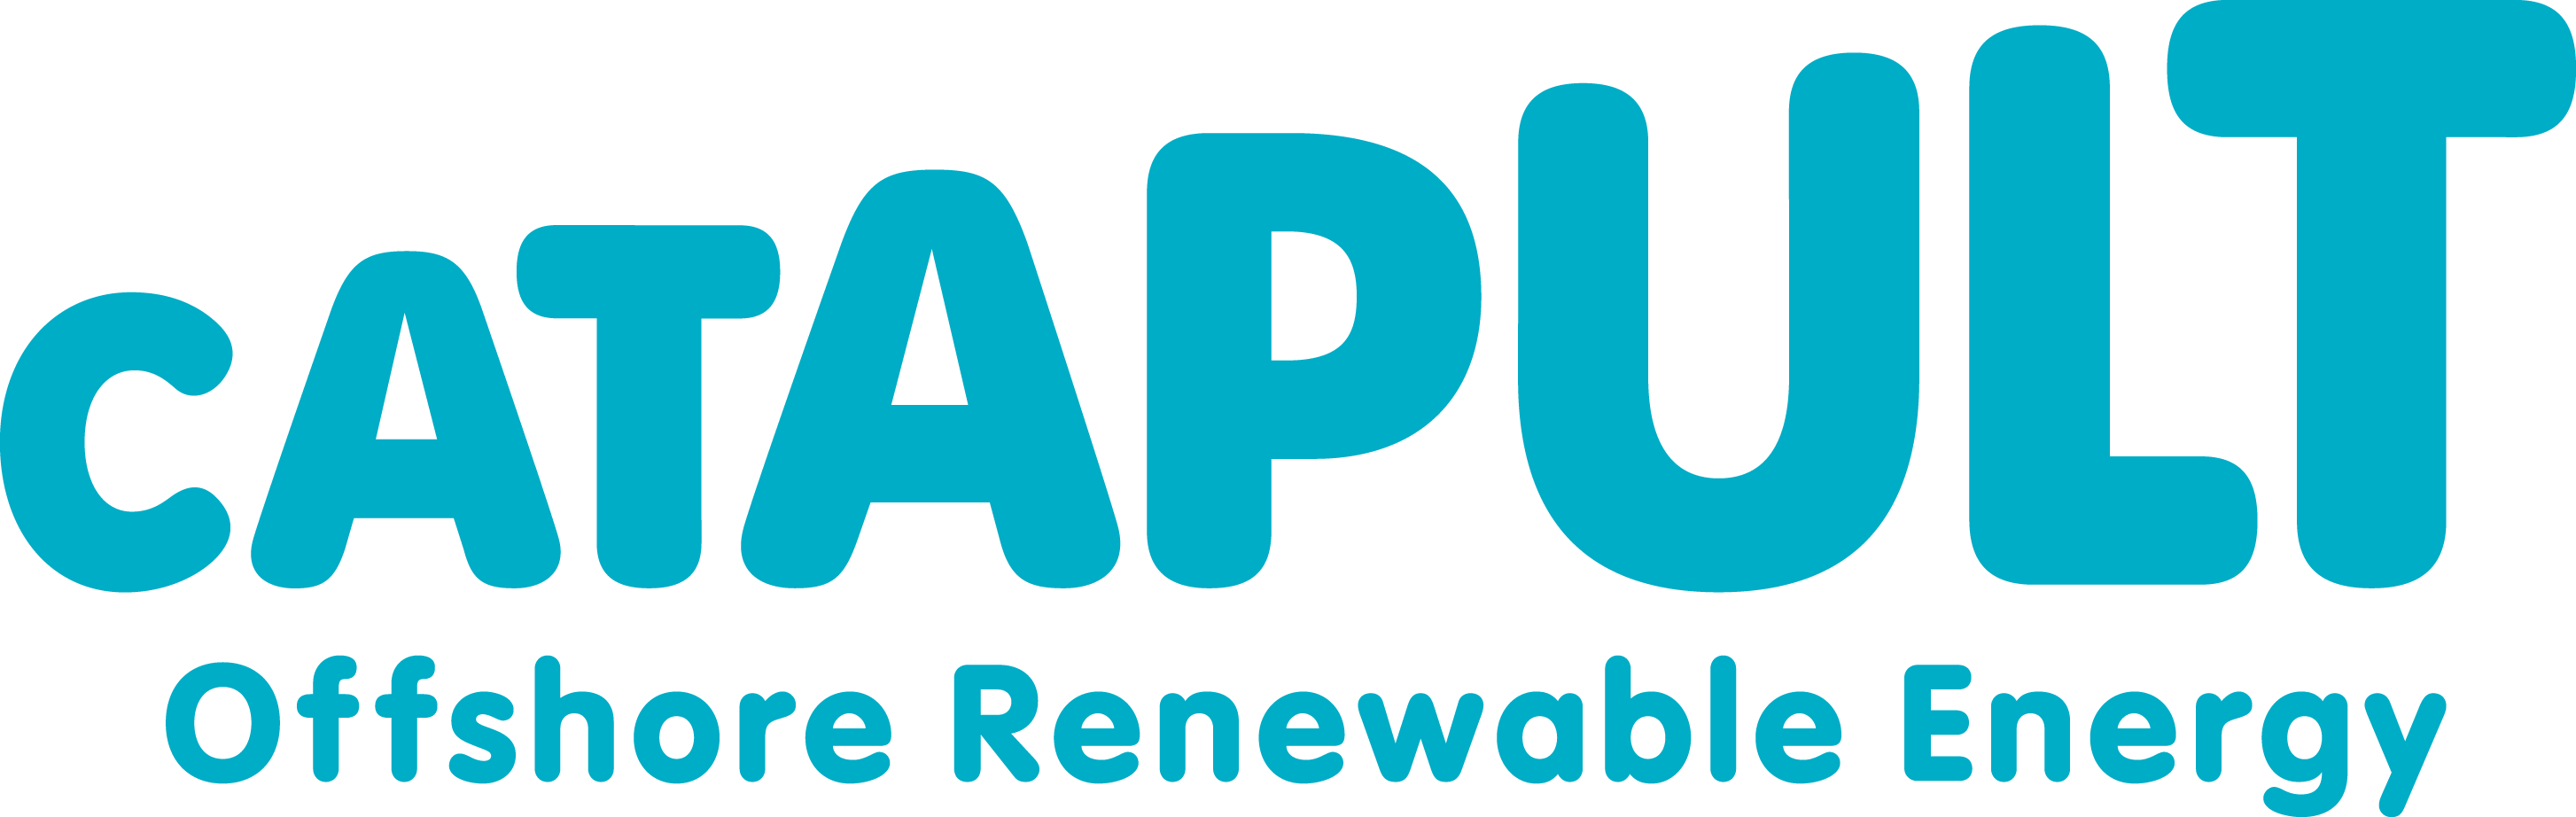 1catapult energy logo